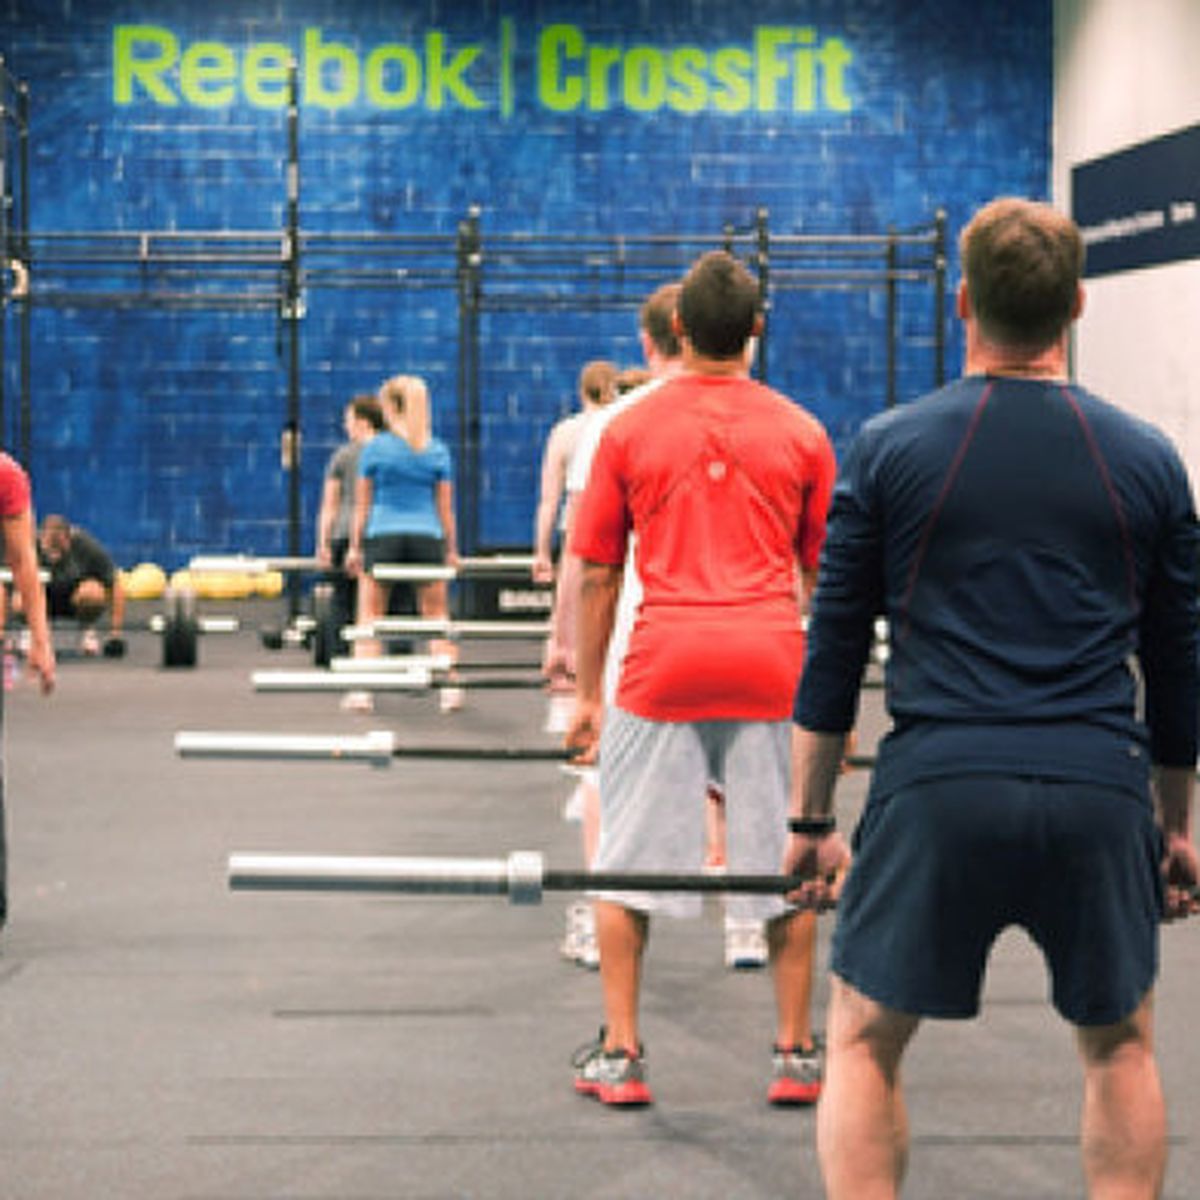 Huracán triángulo cobija CrossFit, el nuevo entrenamiento de los campeones